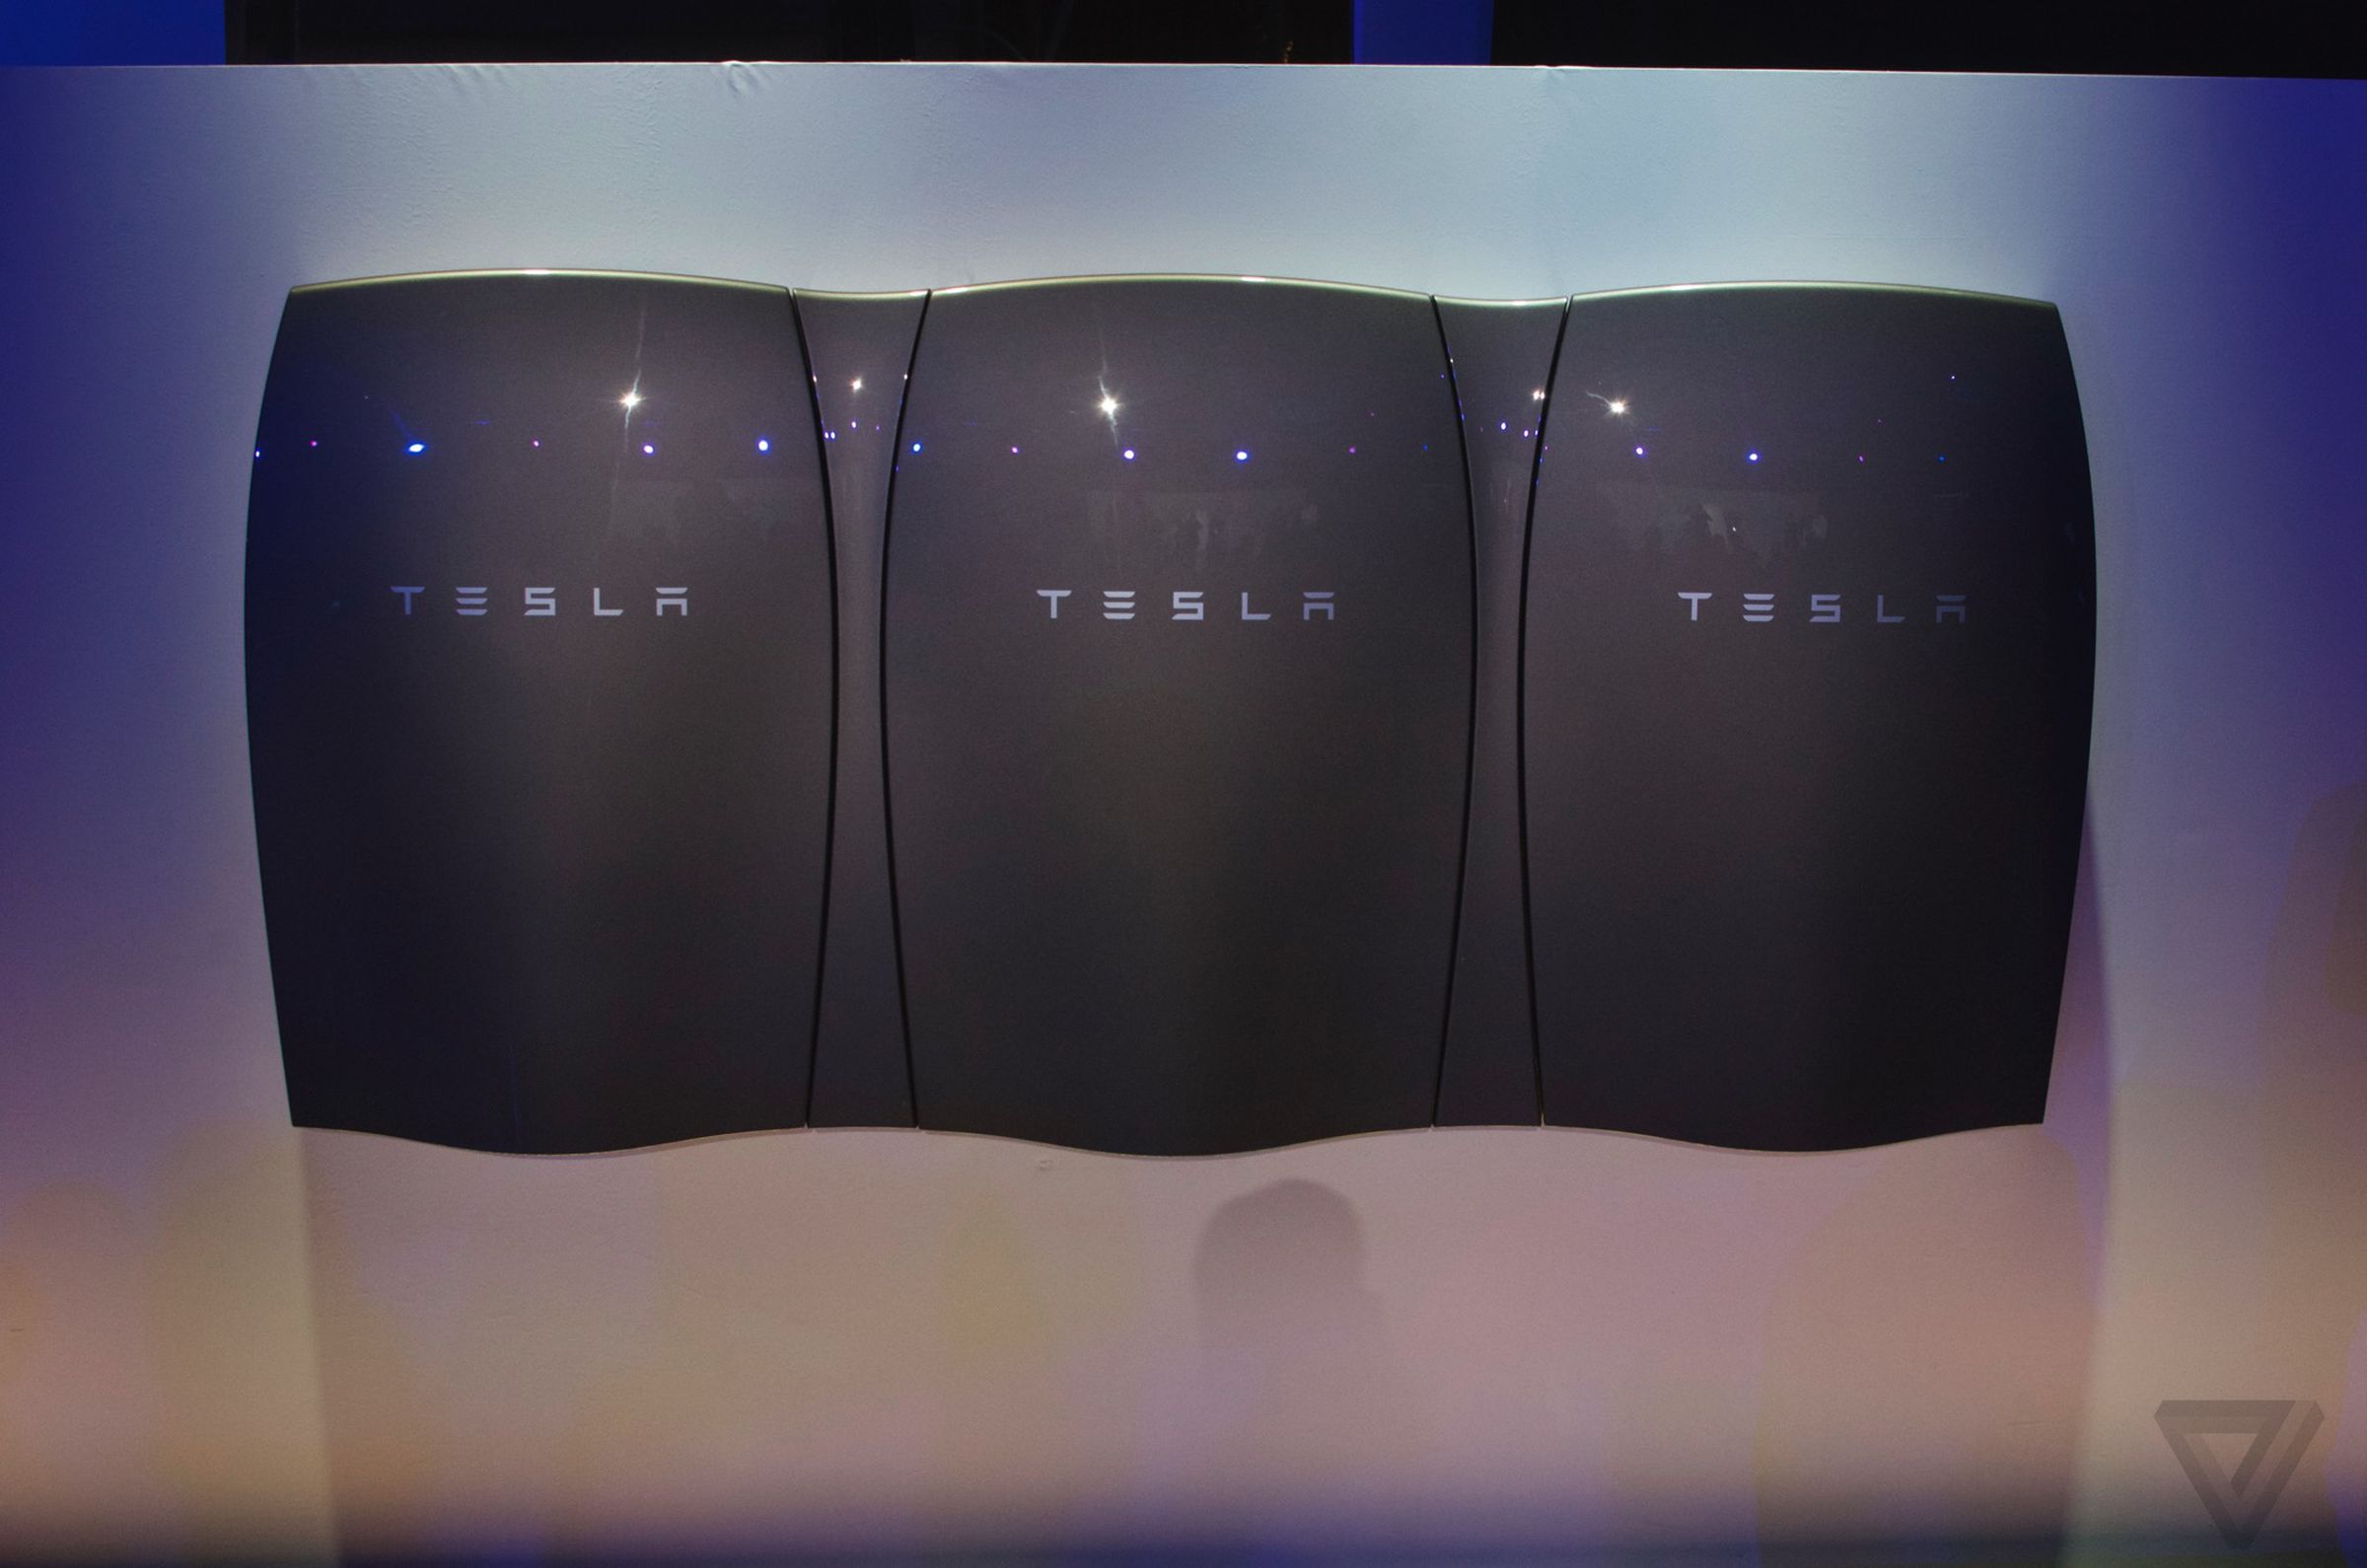 Tesla Energy Powerwall images